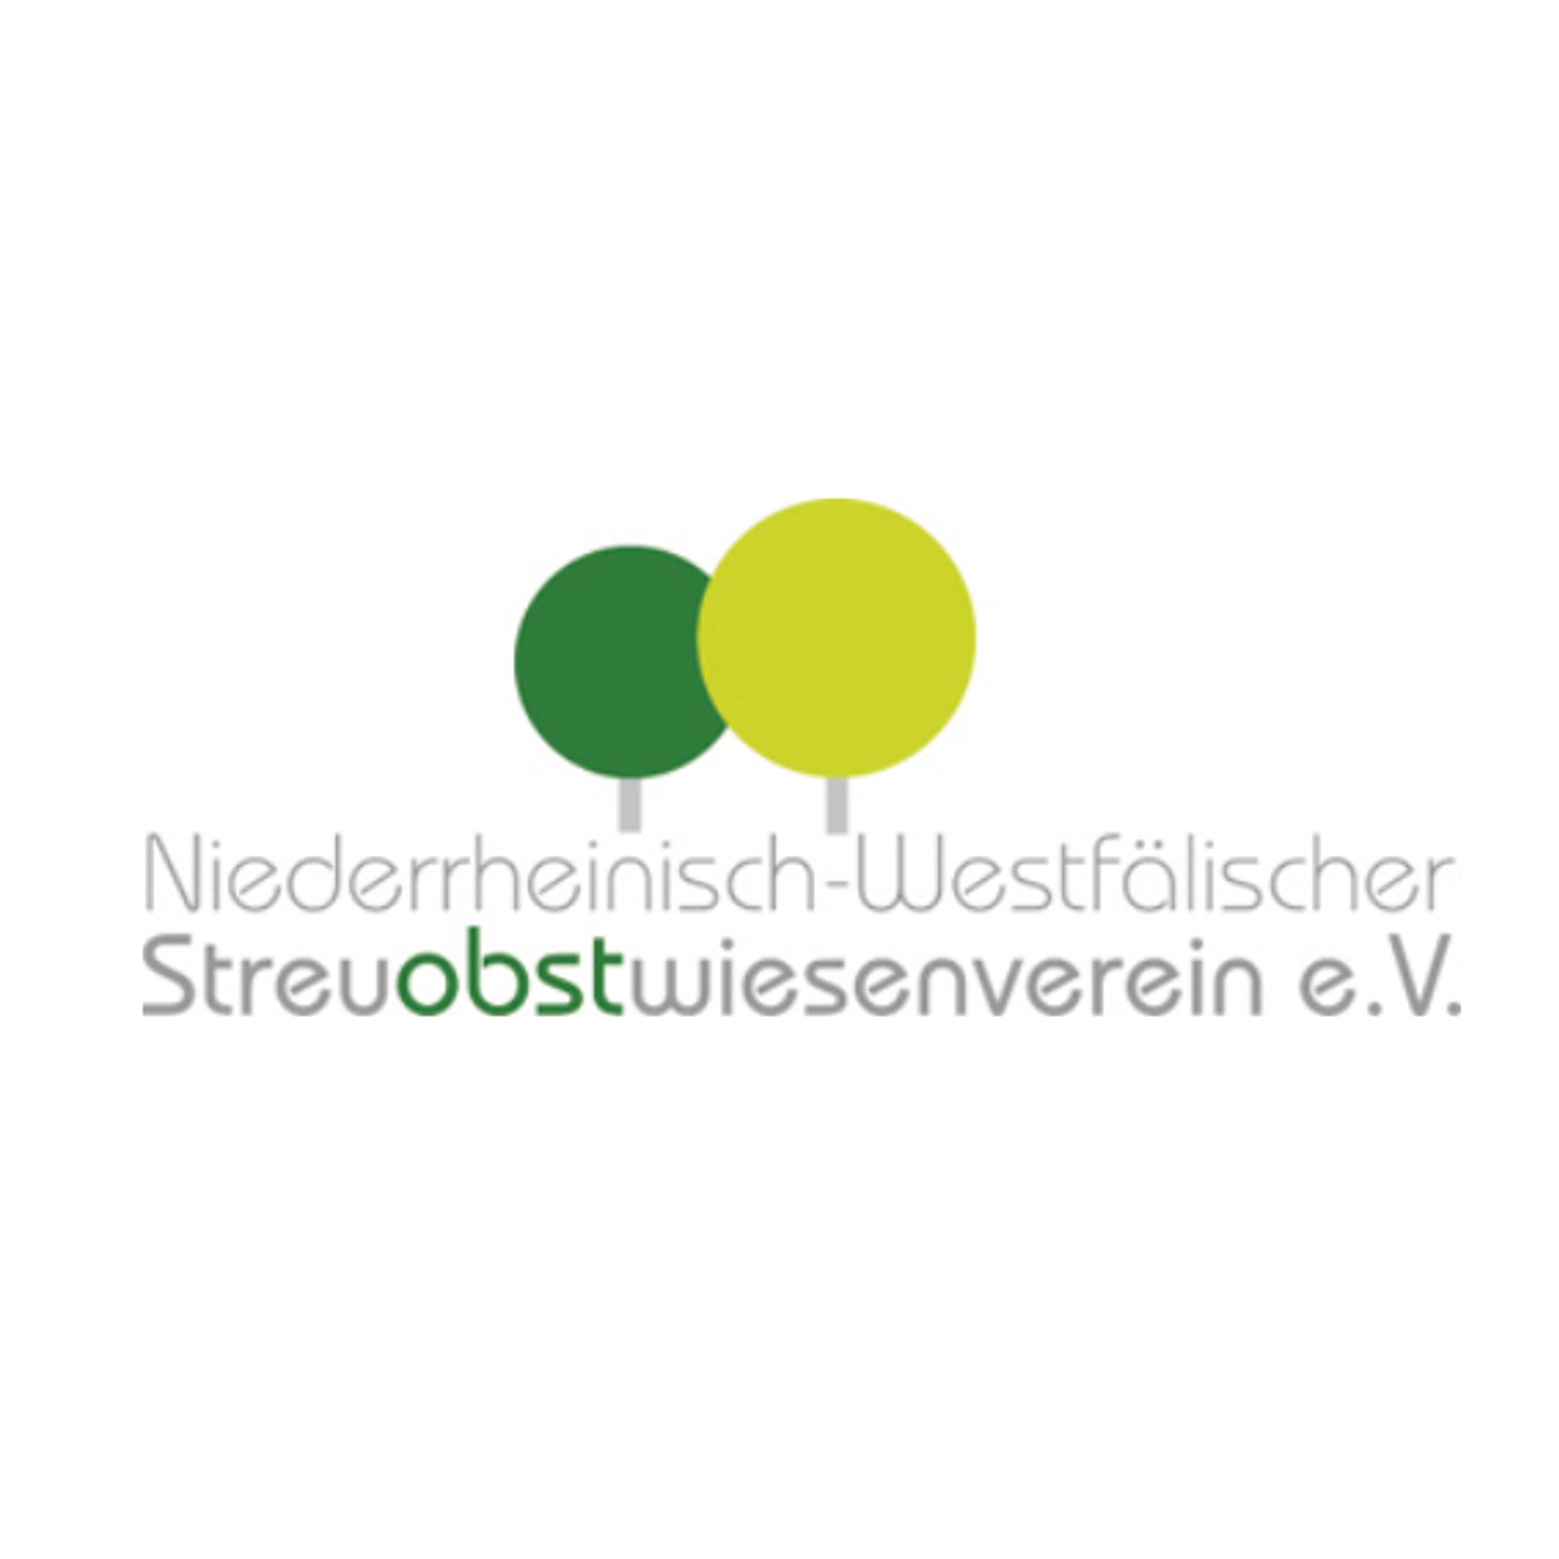 Niederrheinisch-Westfälischer Streuobstwiesenverein e.V.